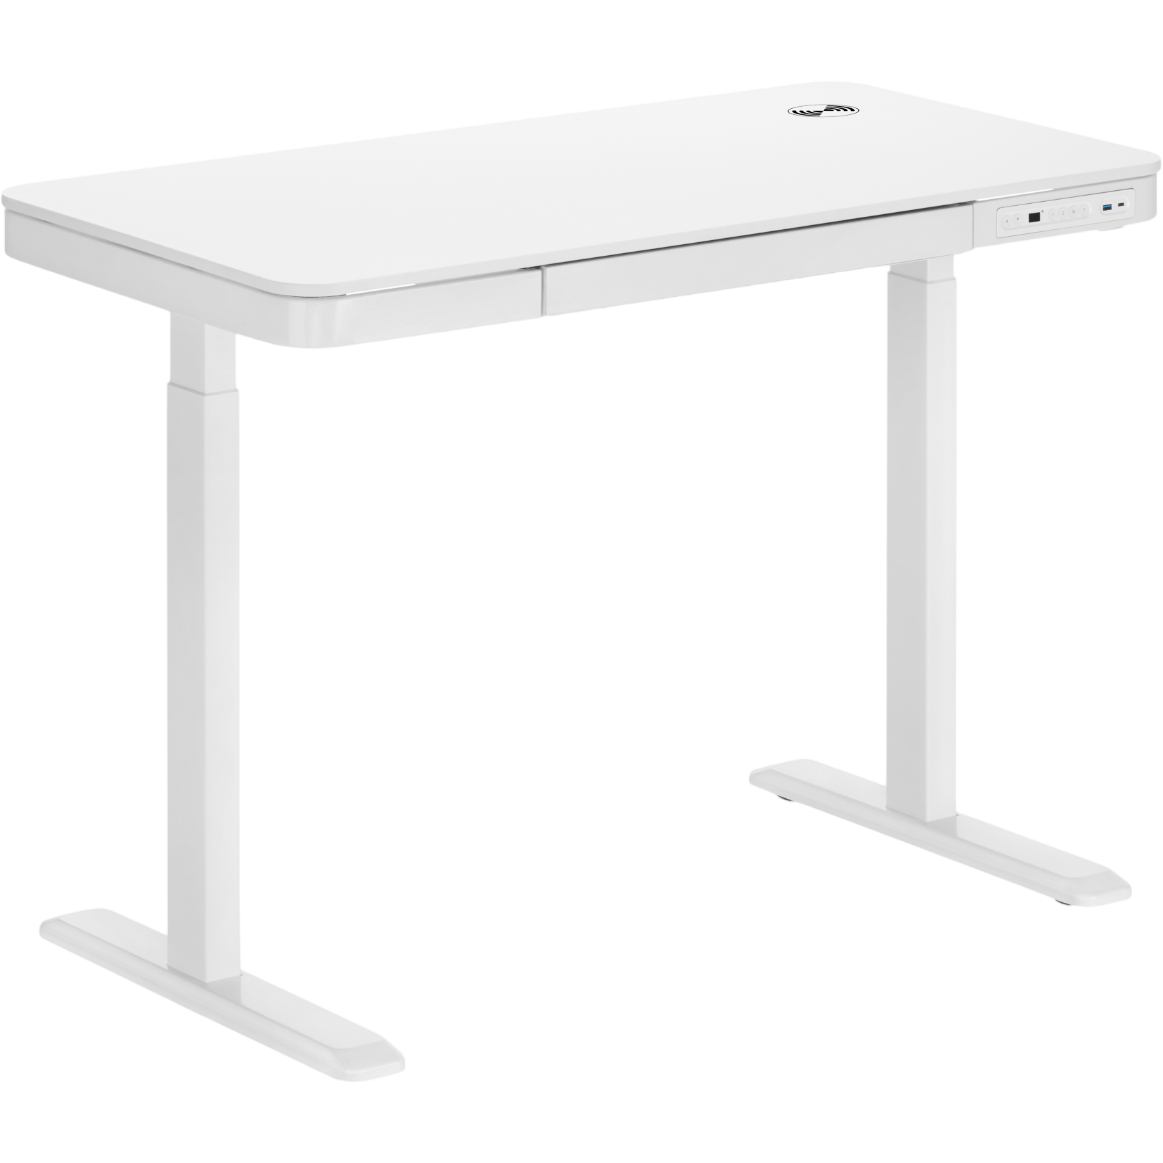 Комп'ютерний стіл OfficePro з електрорегулюванням висоти білий (ODE111WW) - фото 1